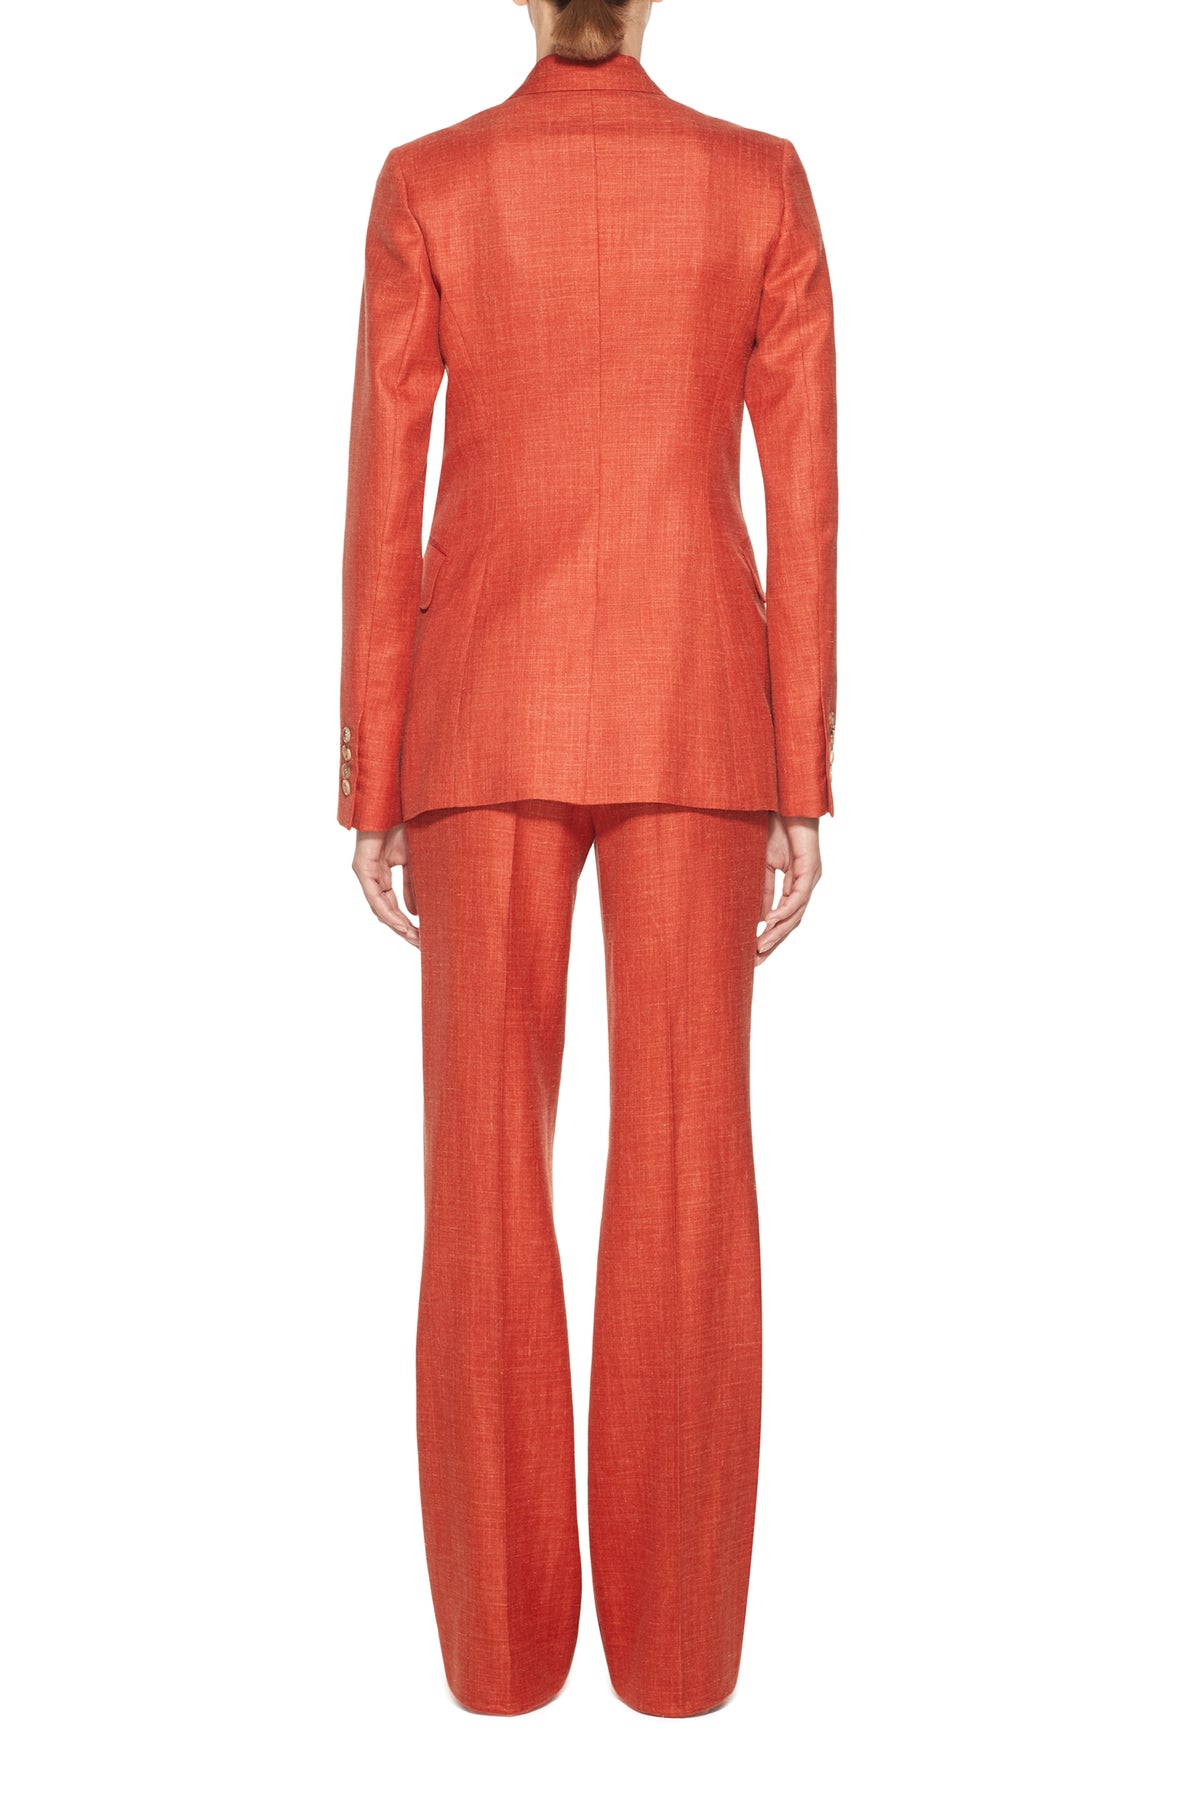 Angela Blazer in Orange Silk Wool and Linen